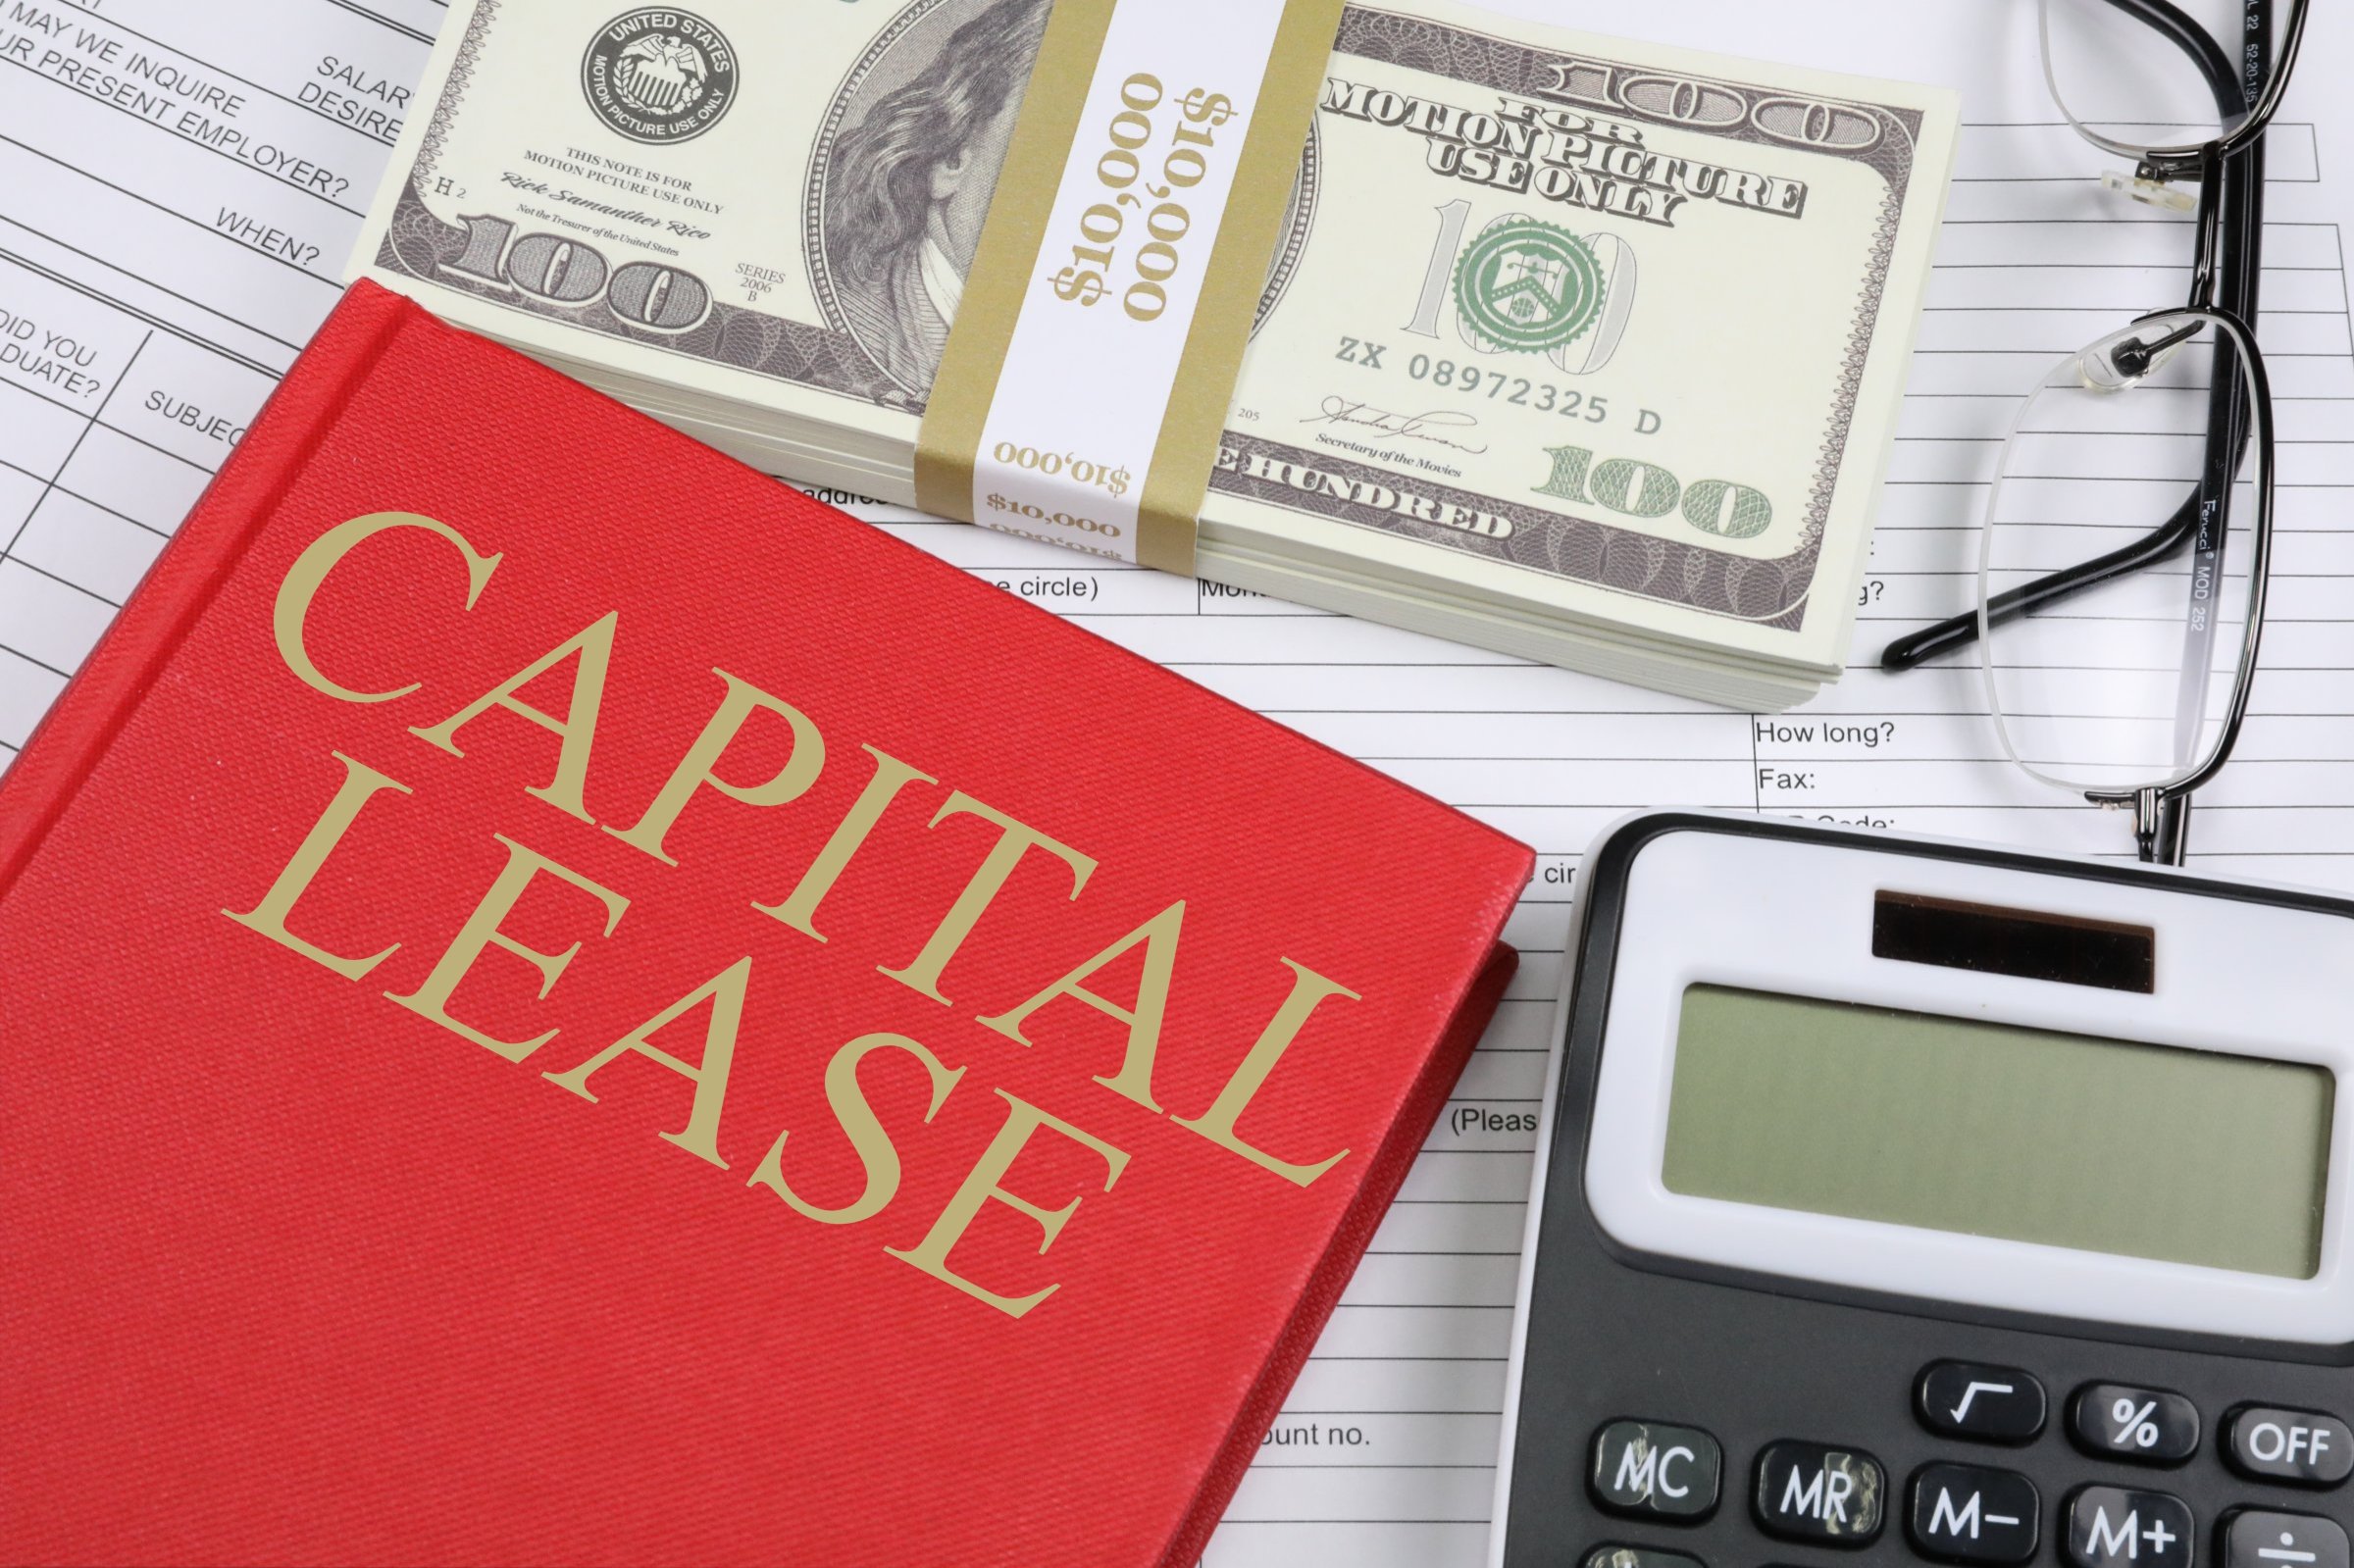 capital lease